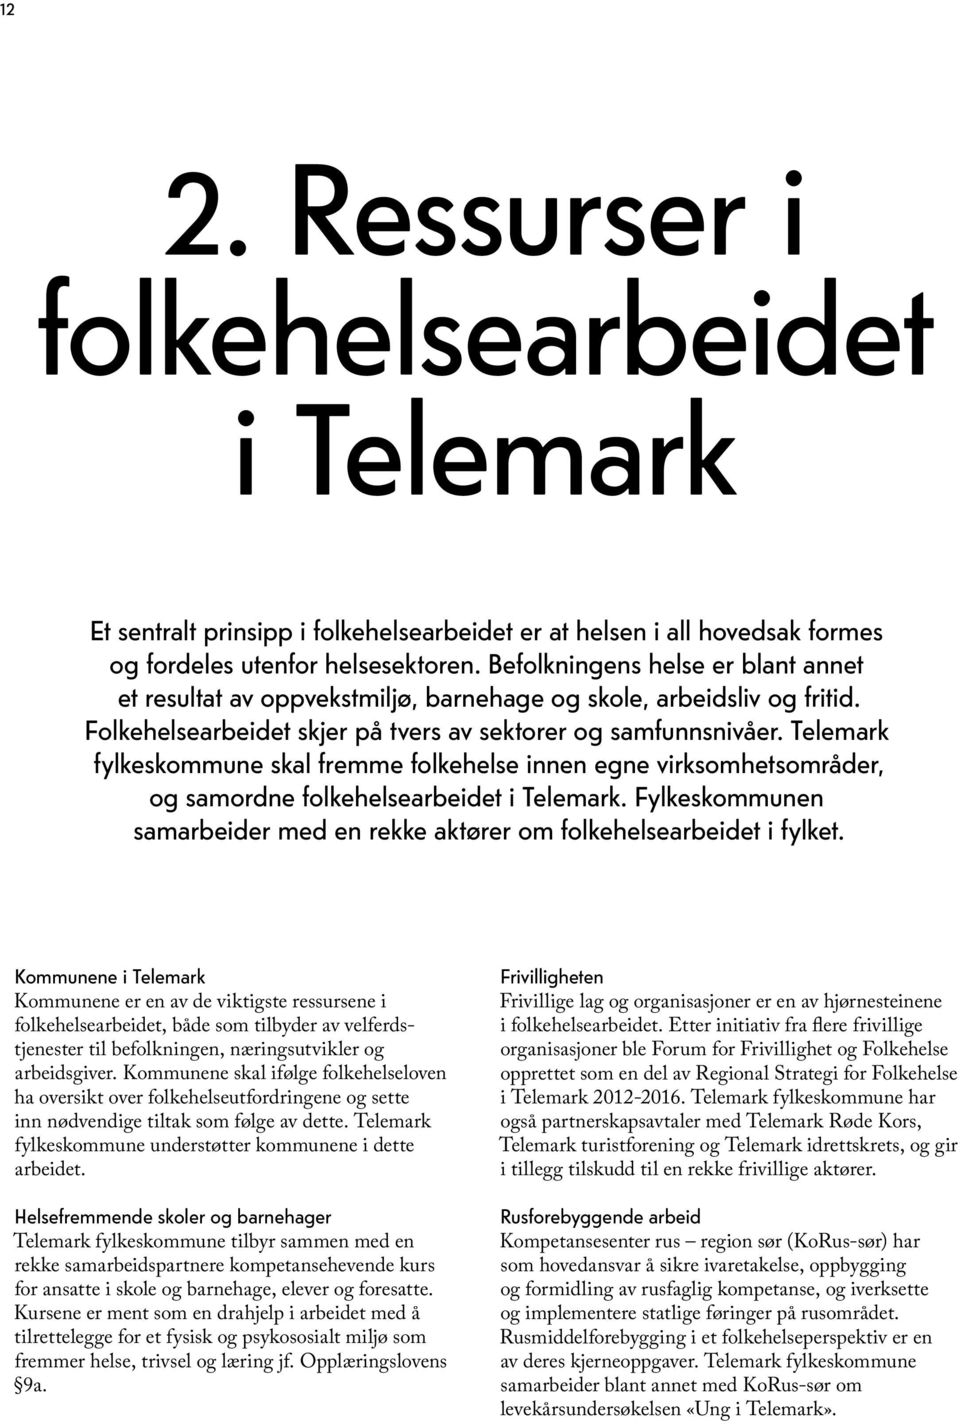 Telemark fylkeskommune skal fremme folkehelse innen egne virksomhetsområder, og samordne folkehelsearbeidet i Telemark. Fylkeskommunen samarbeider med en rekke aktører om folkehelsearbeidet i fylket.